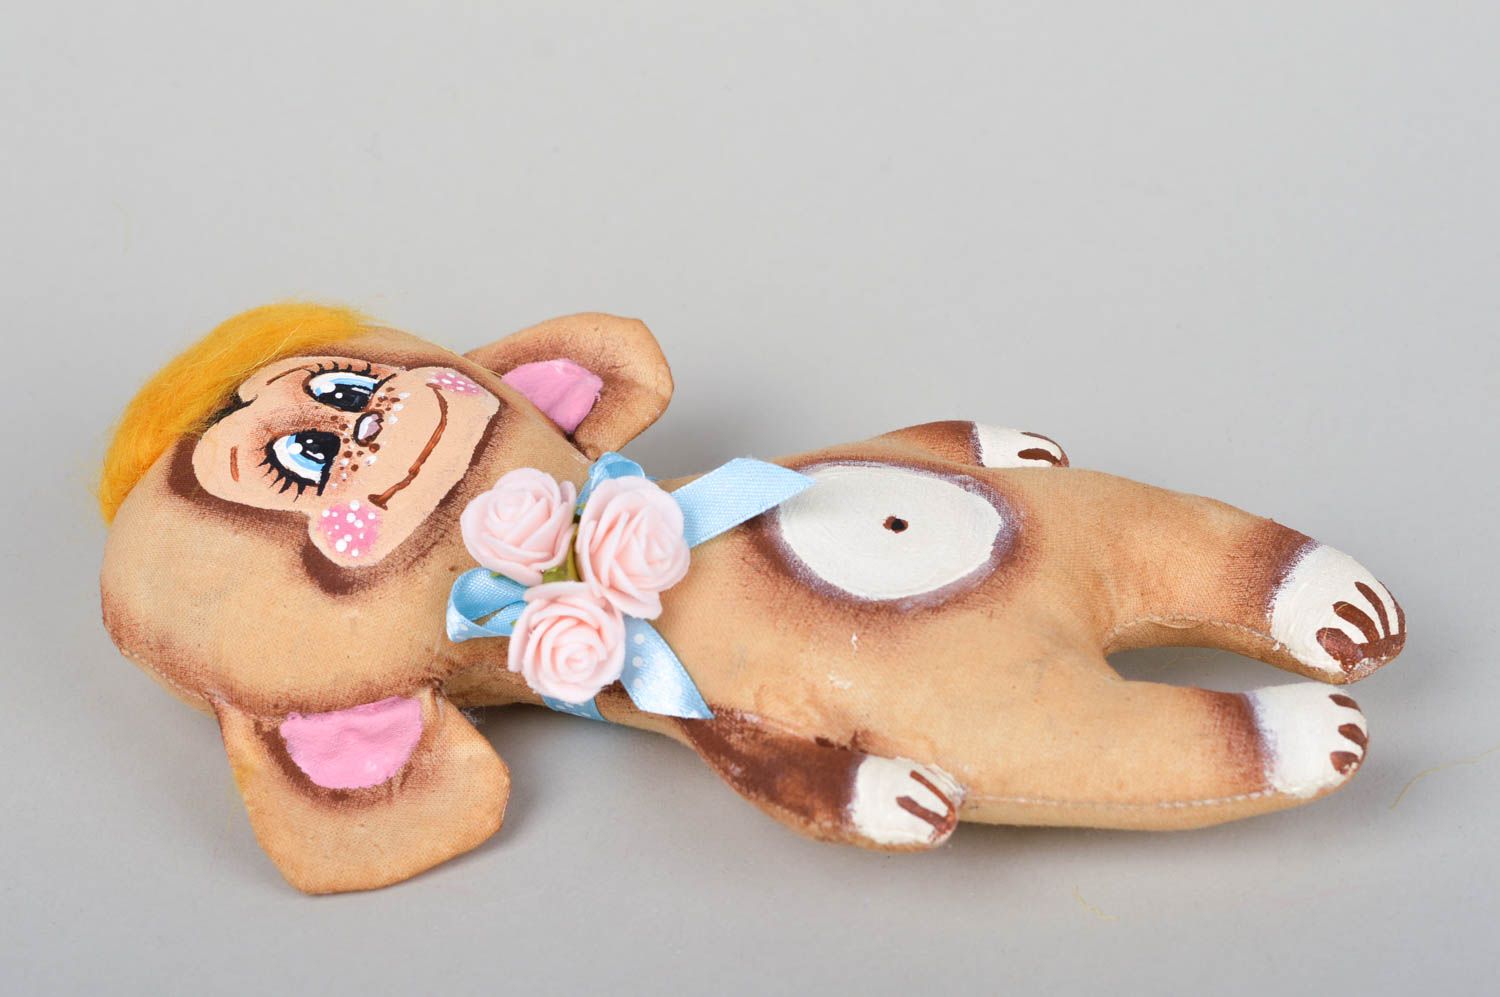 Textil Spielzeug handgemachtes kleines Kuscheltier originelles Geschenk Affe foto 3